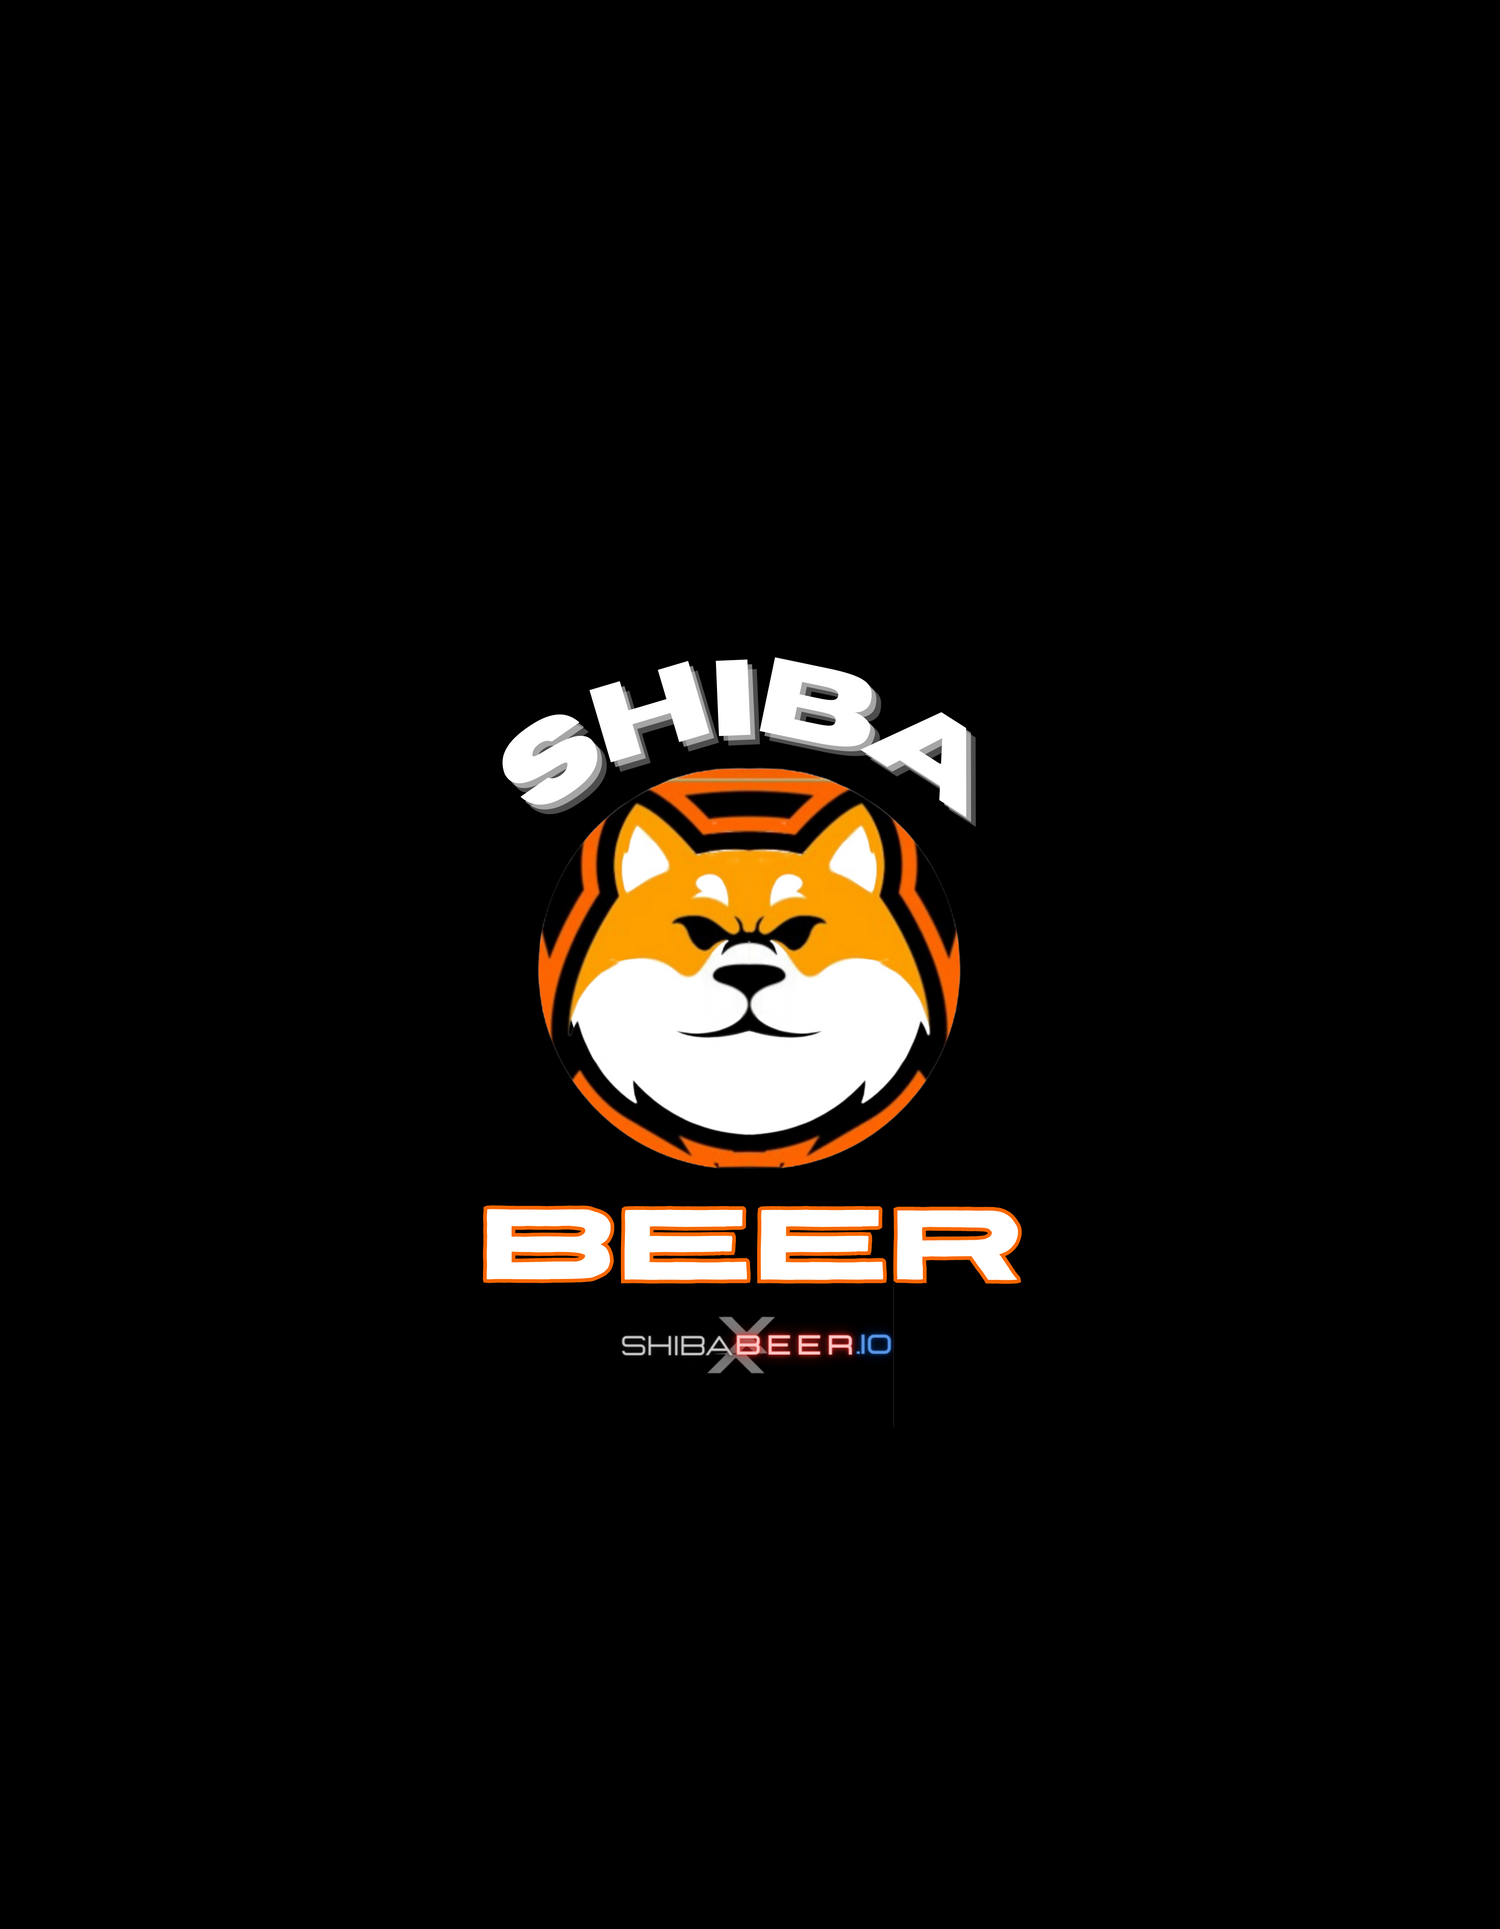 Shiba Beer